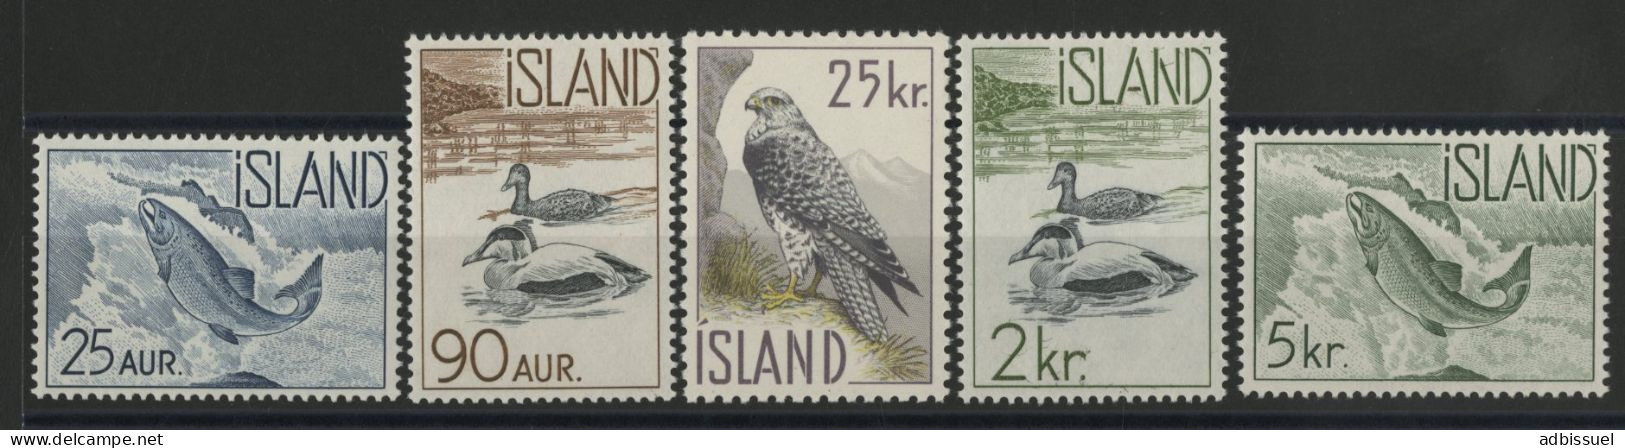 ISLANDE N° 294 à 298 Cote 30 € Neufs ** (MNH) Série Complète TB. - Unused Stamps